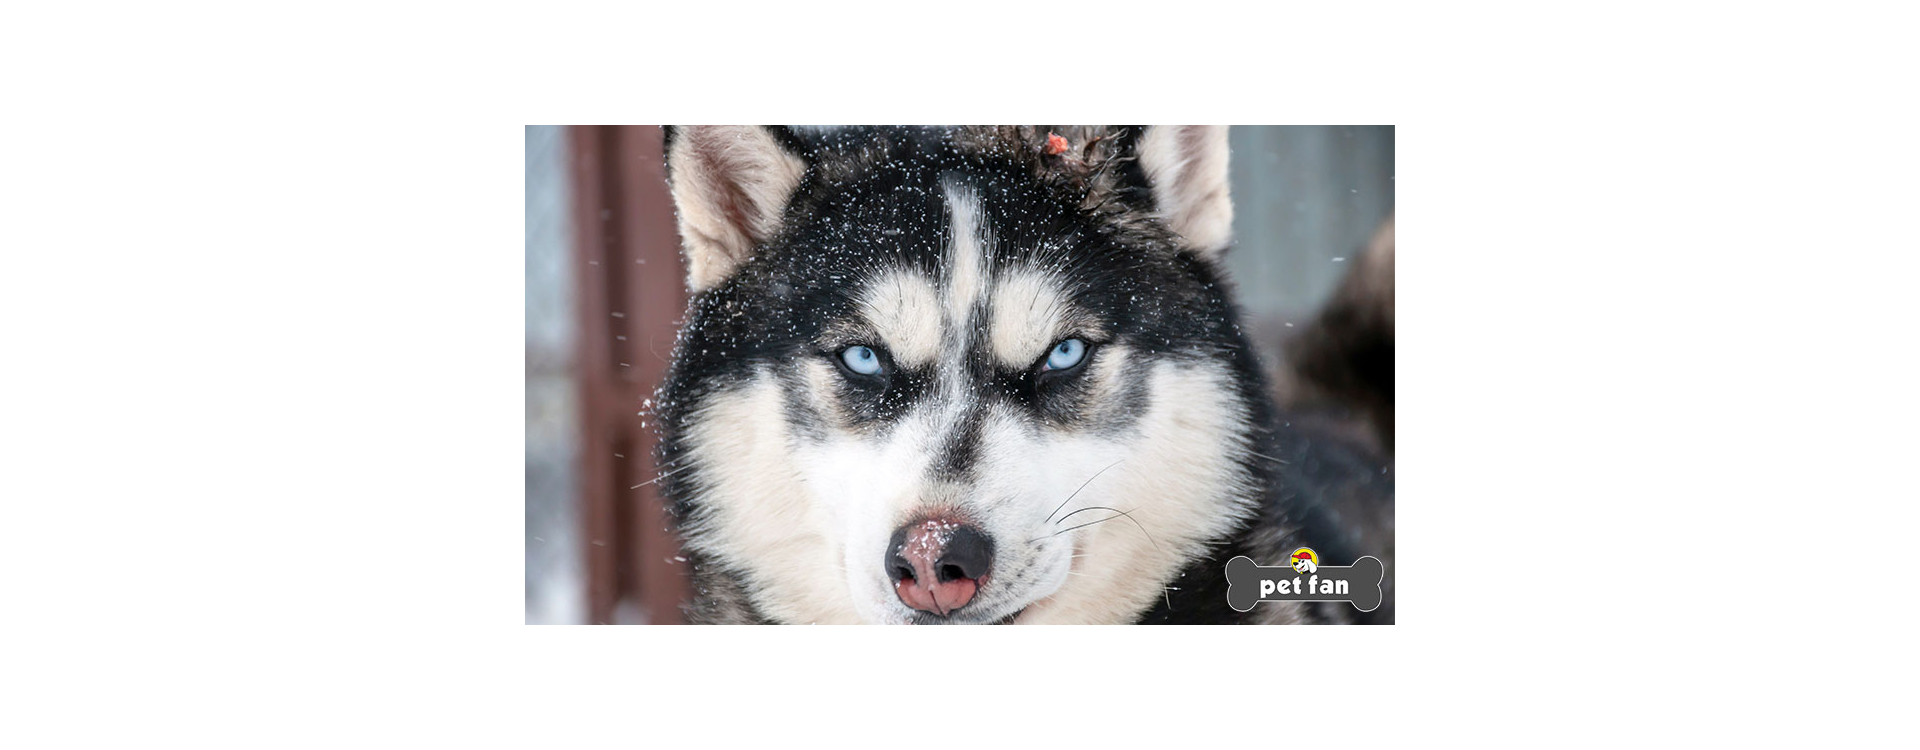 10 πράγματα που ίσως αγνοούσες για τα Χάσκυ Σιβηρίας (Siberian Husky)